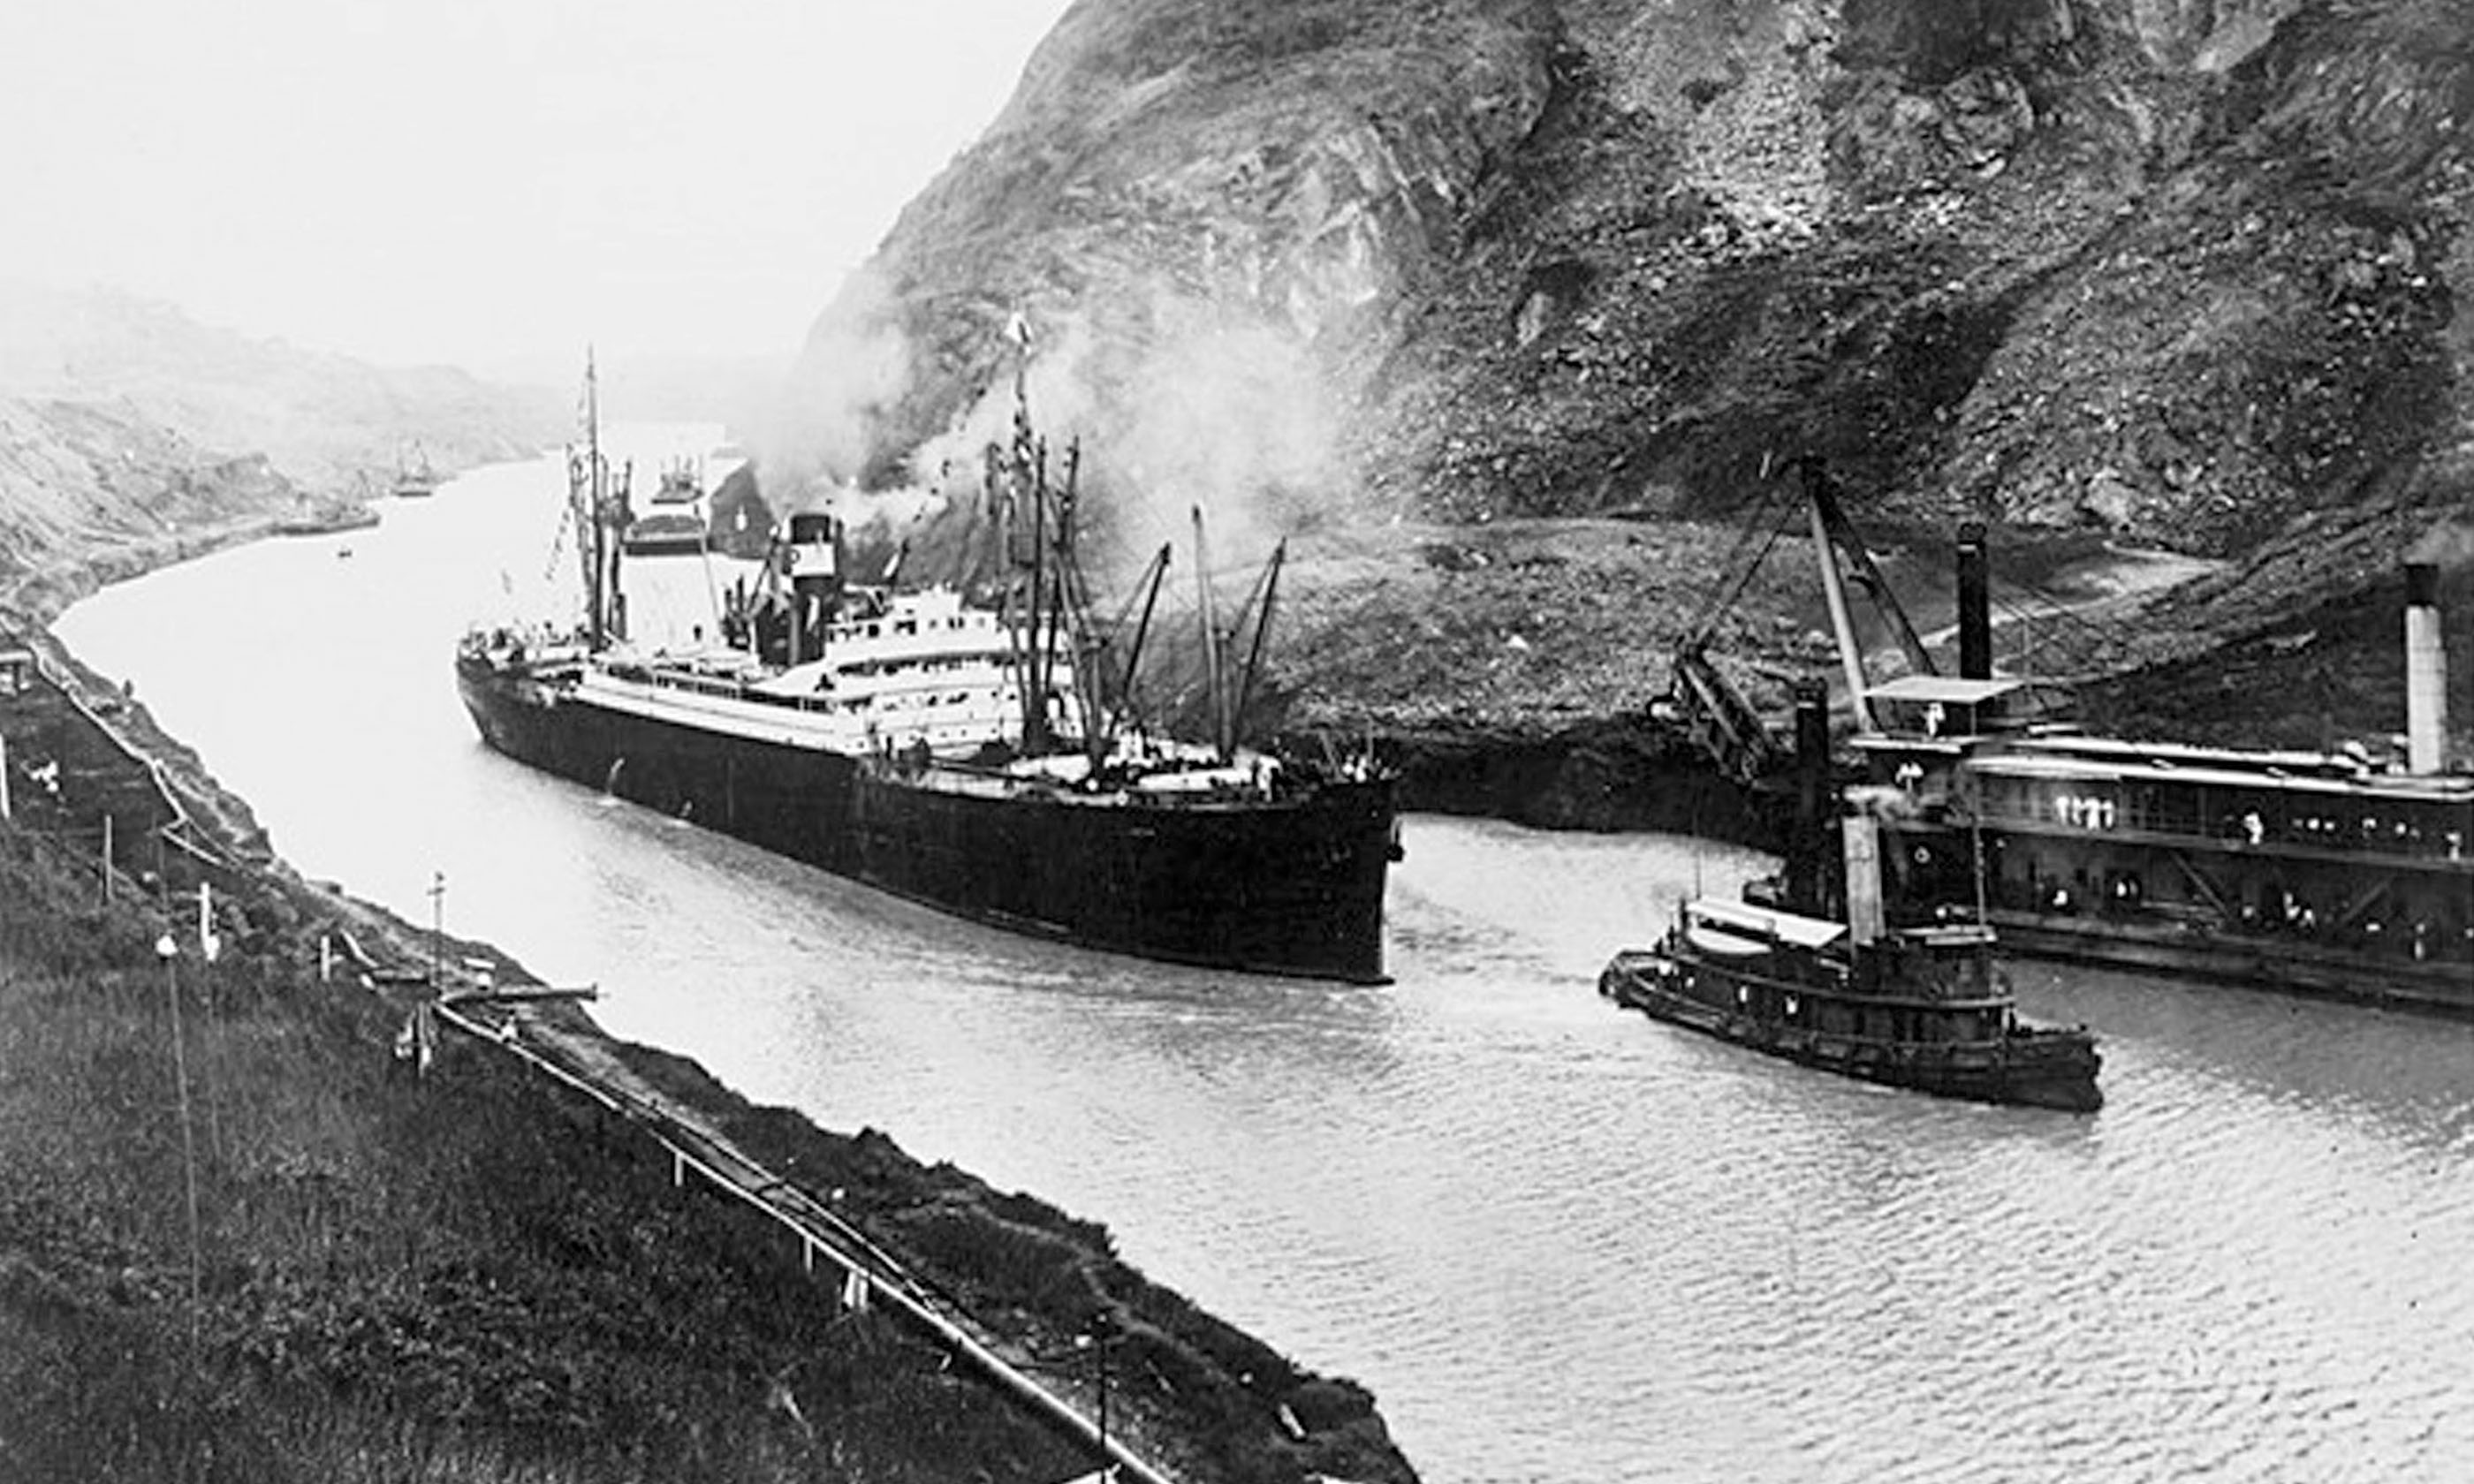 Канал 1920 года. Открытие Панамского канала в 1914 г. 15 Августа 1914 первое судно прошло Панамский канал. 1914 Проход первого судна через Панамский канал. Панамский канал 20 век.